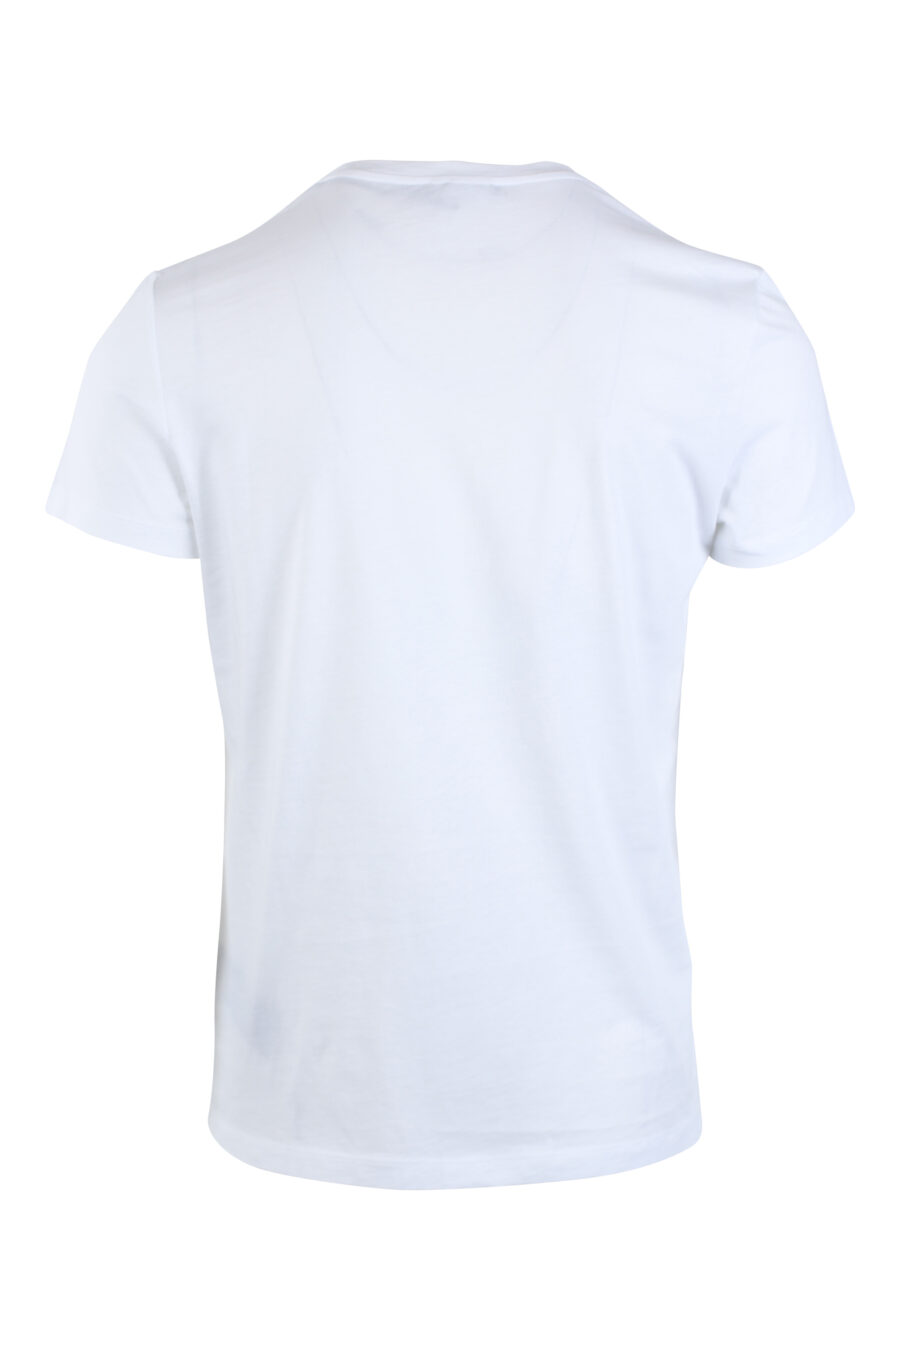 Camiseta blanca con maxilogo dorado "paris" - IMG 2613 1